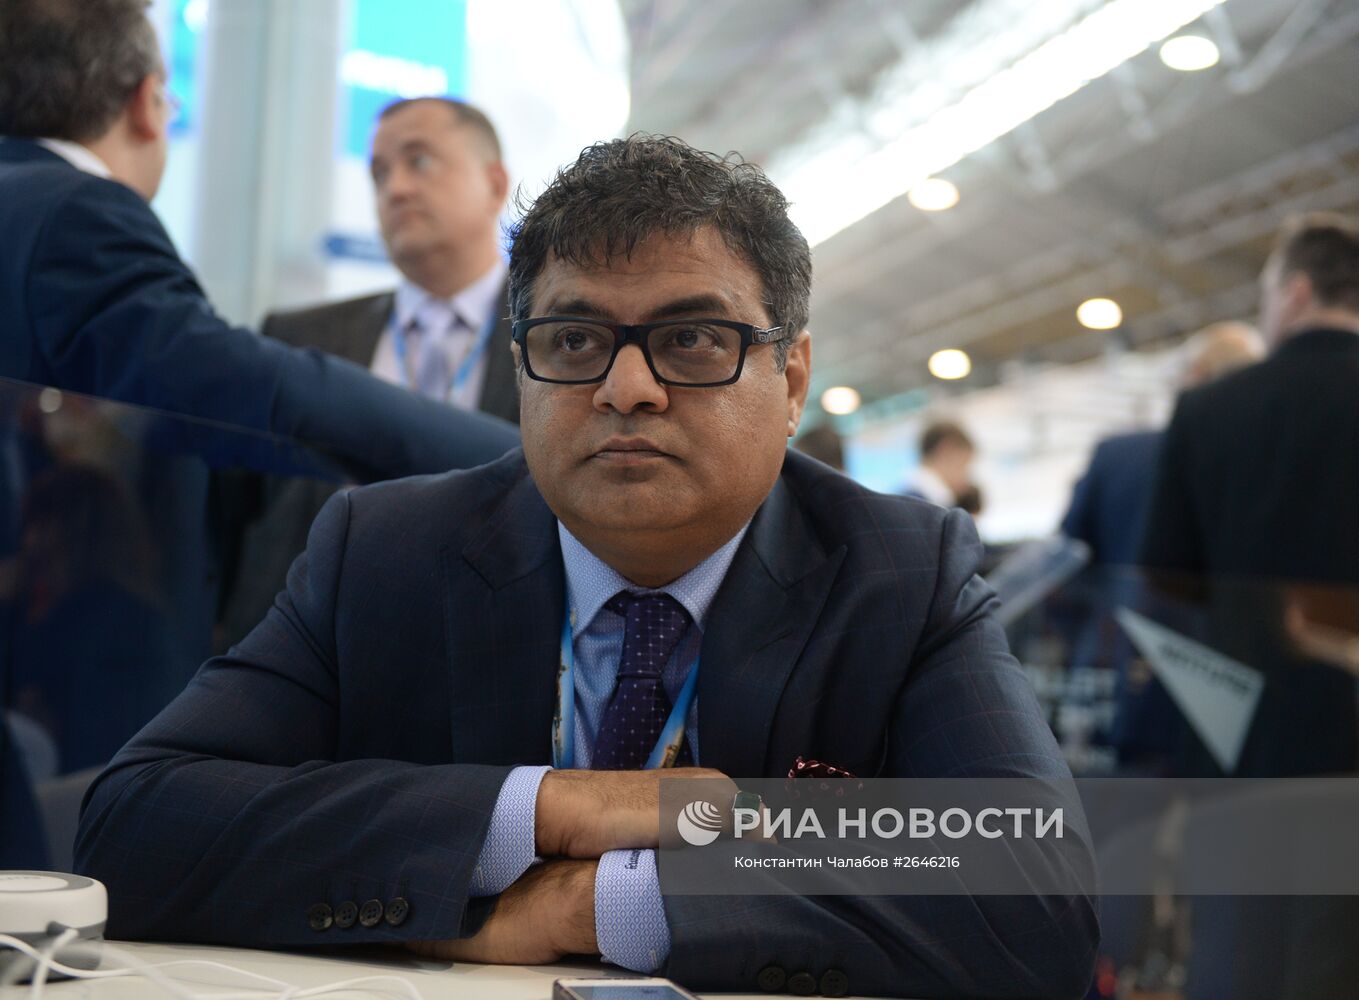 Петербургский международный экономический форум 2015 (ПМЭФ). День второй